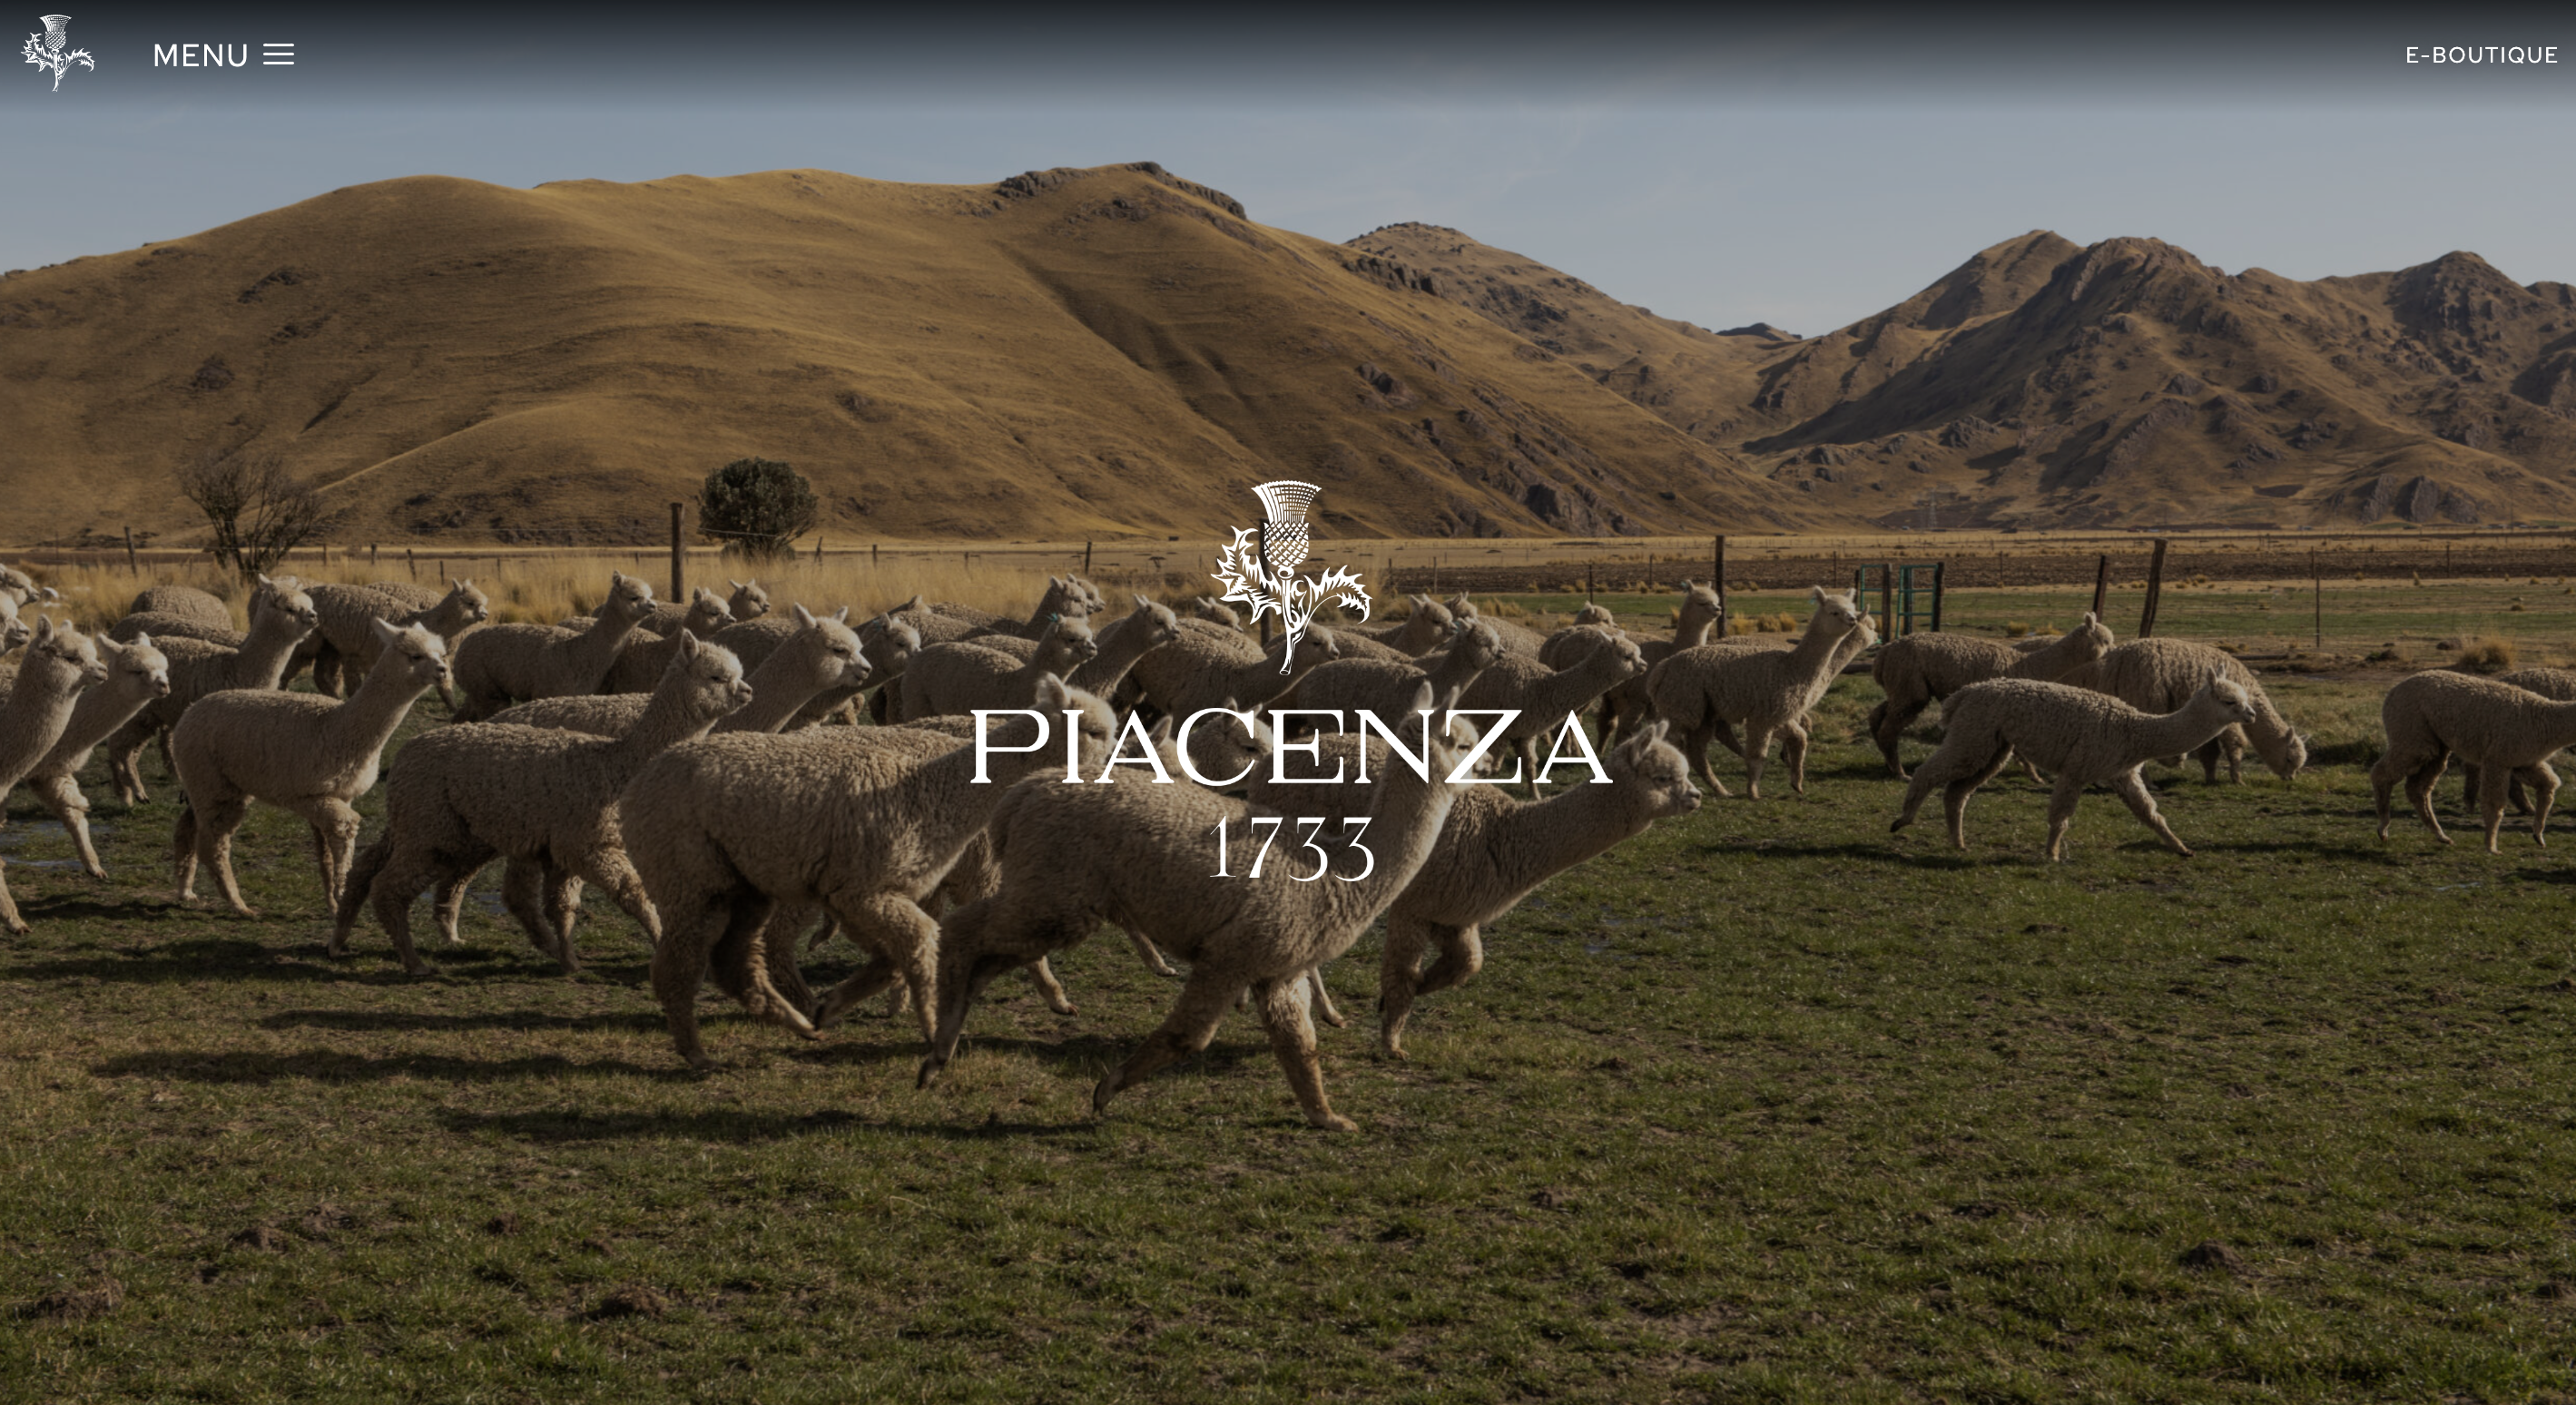 意大利百年奢华面料制造商 Piacenza 1733 上财年营业额突破1亿欧元，亚洲市场小幅增长